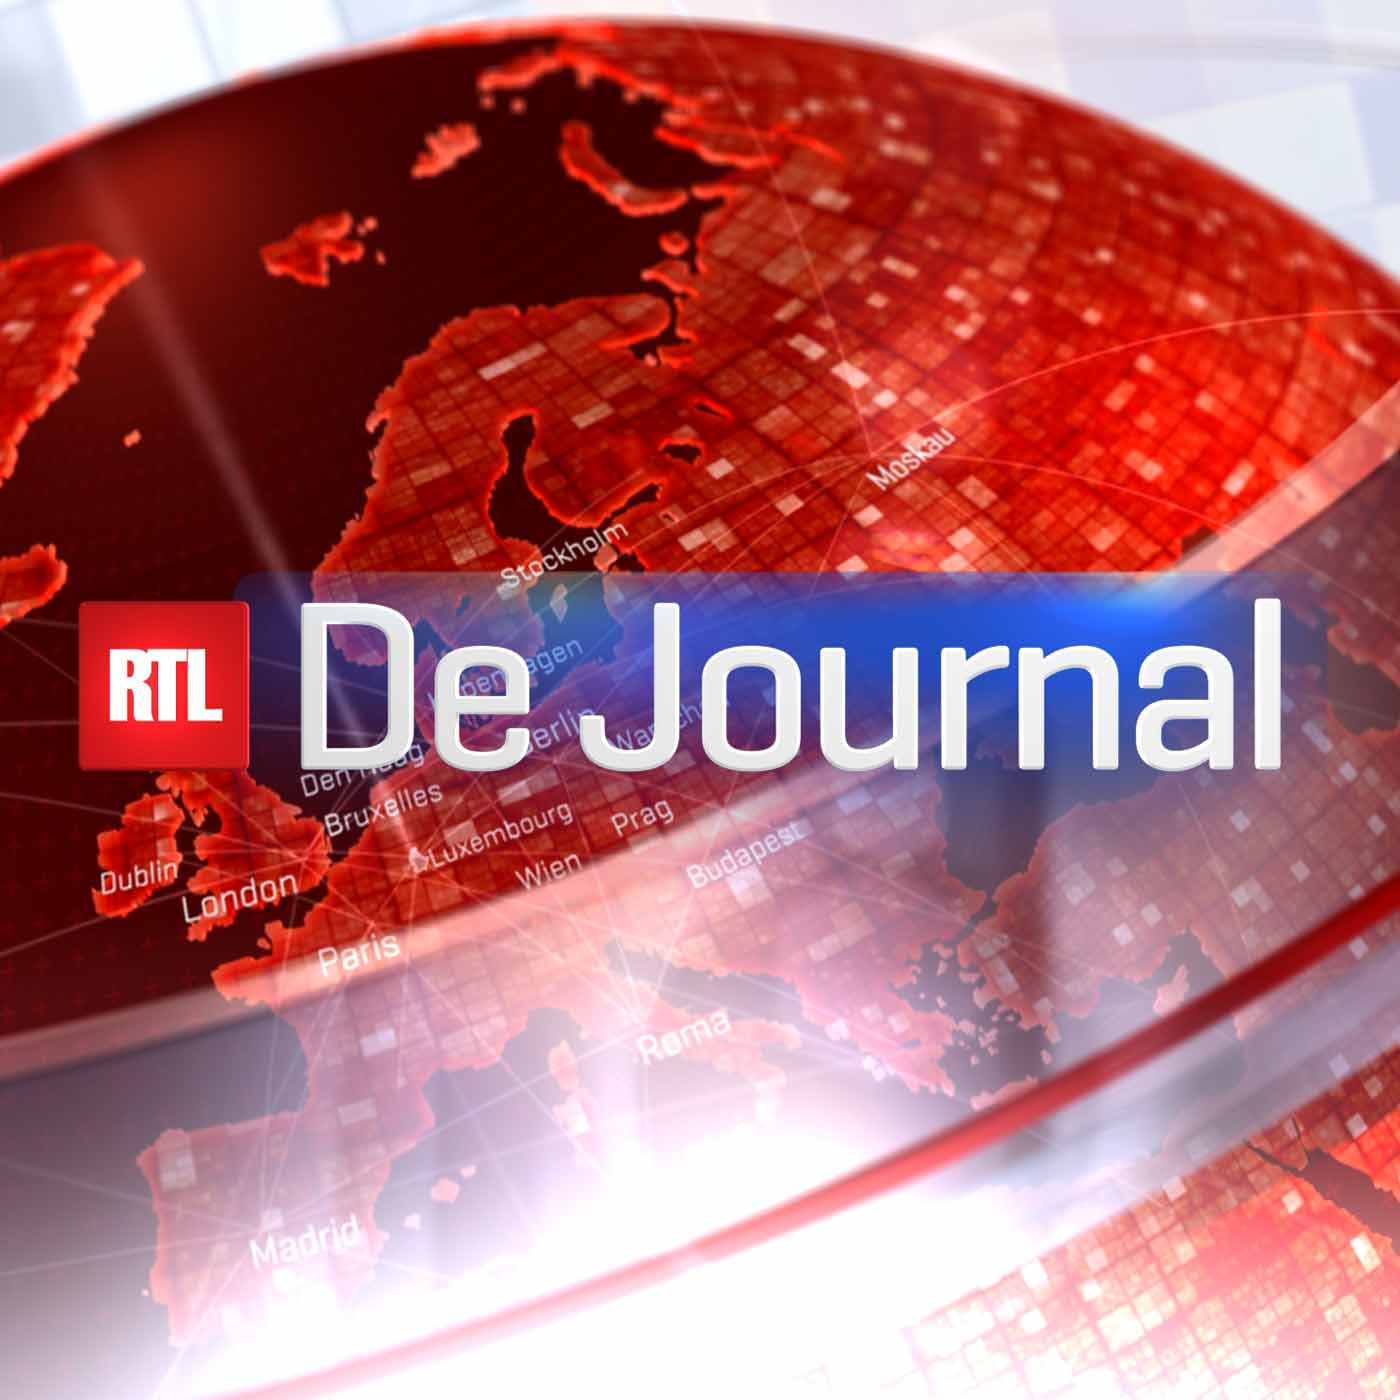 RTL - De Journal (Large)